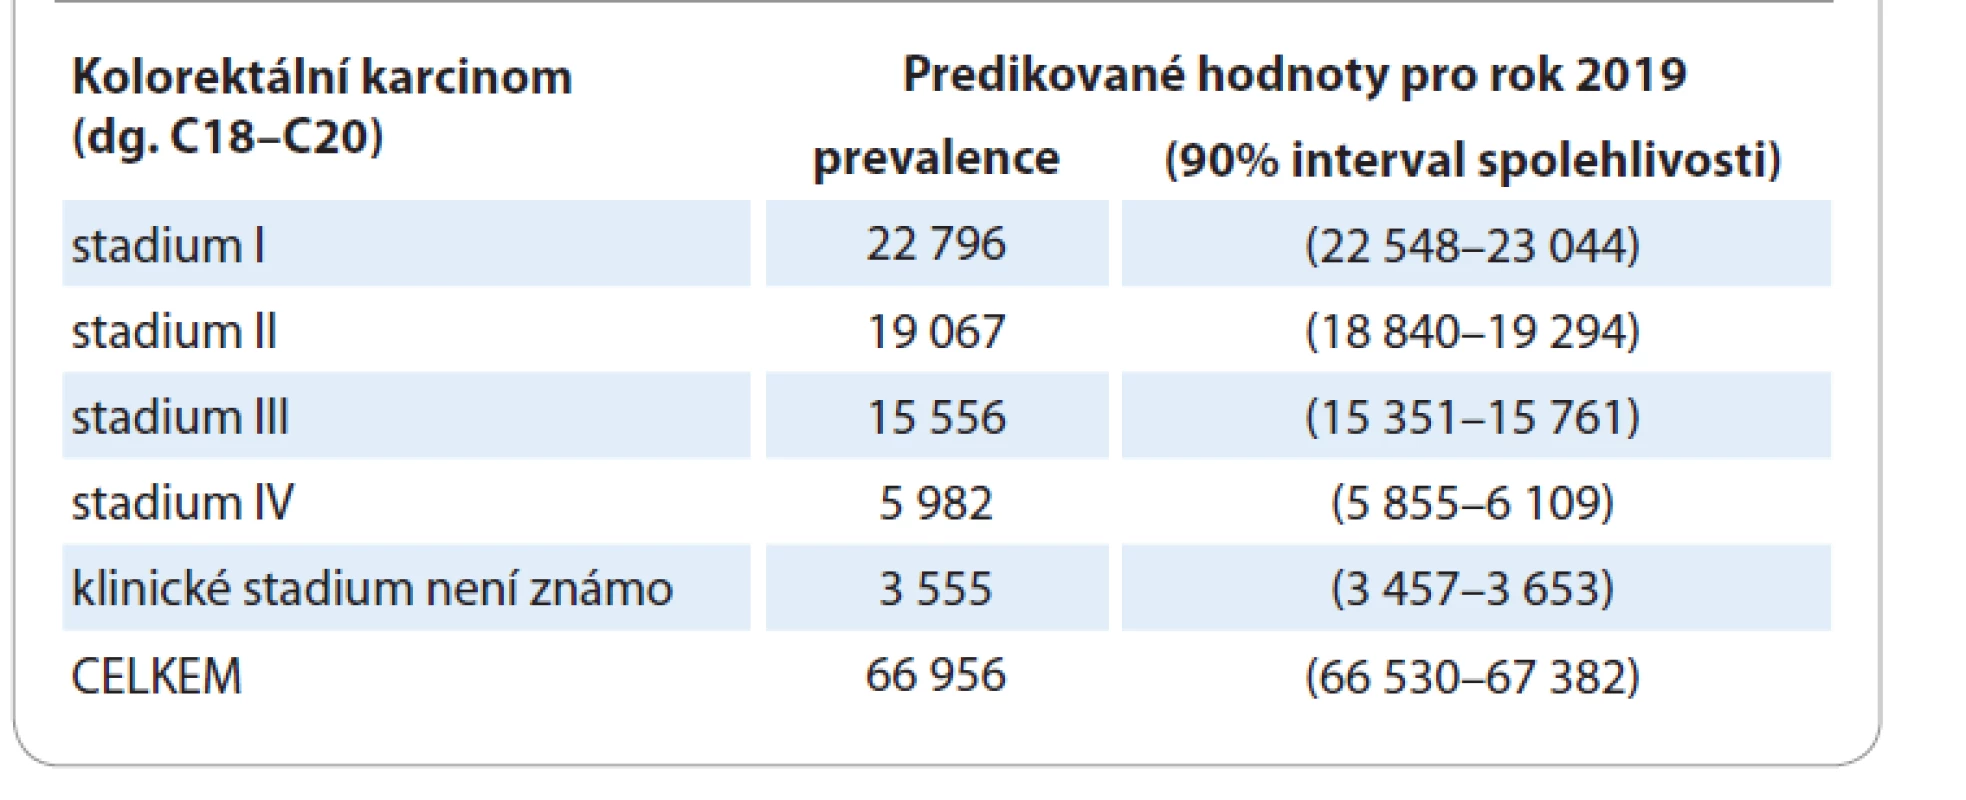 Odhad prevalence kolorektálního karcinomu v ČR pro rok 2019 podle dat
Národního onkologického registru.